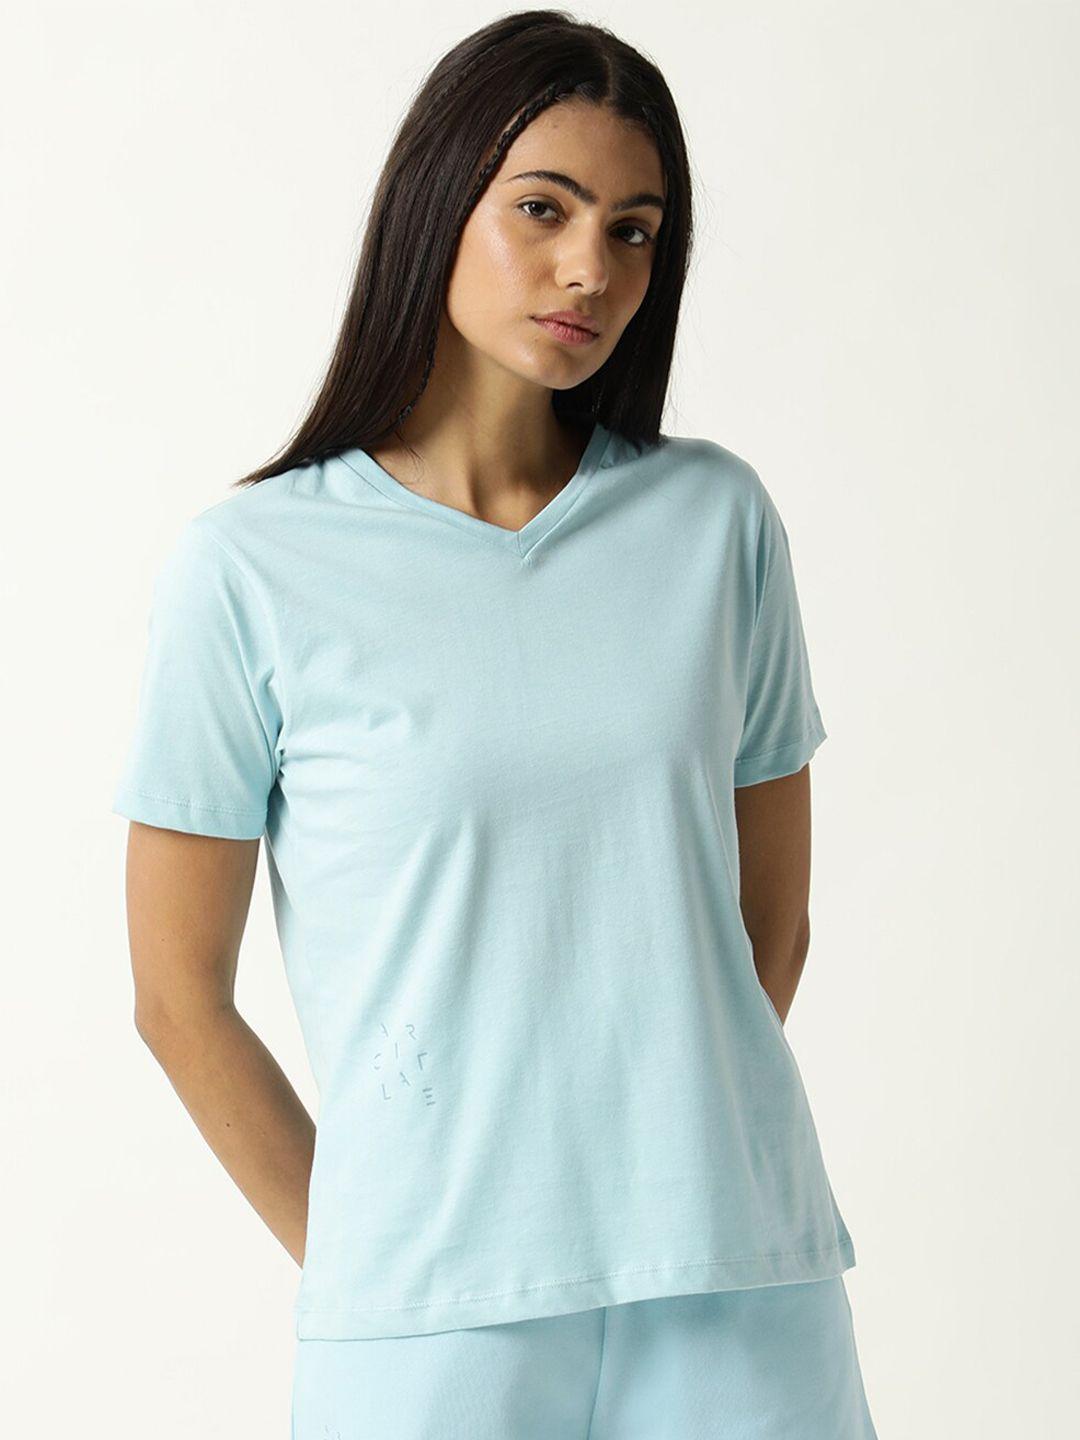 articale women blue solid v-neck slim fit cotton t-shirt